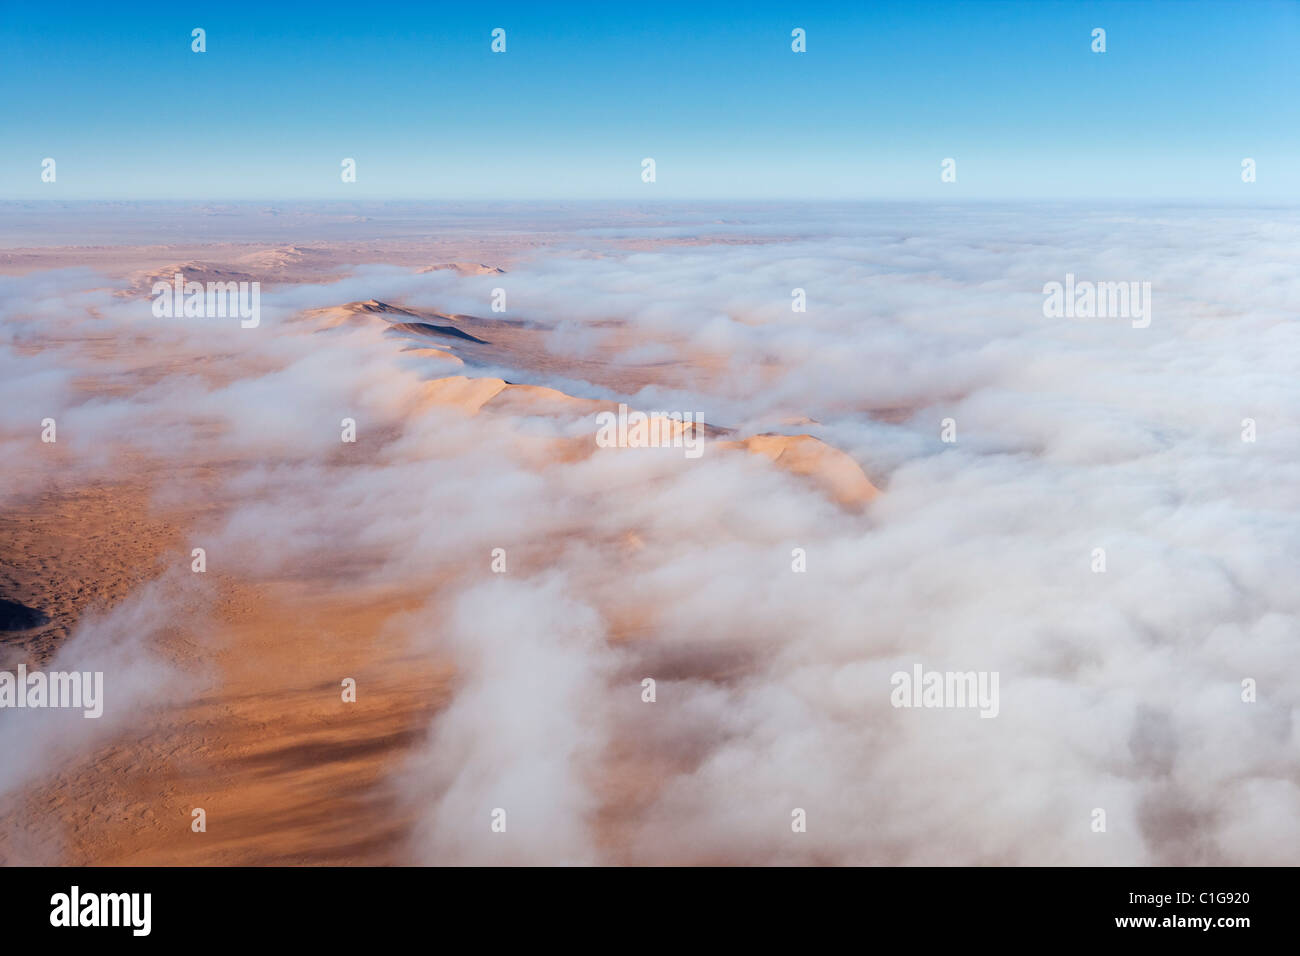 Vista aerea di dune di sabbia del deserto namibiano Foto Stock